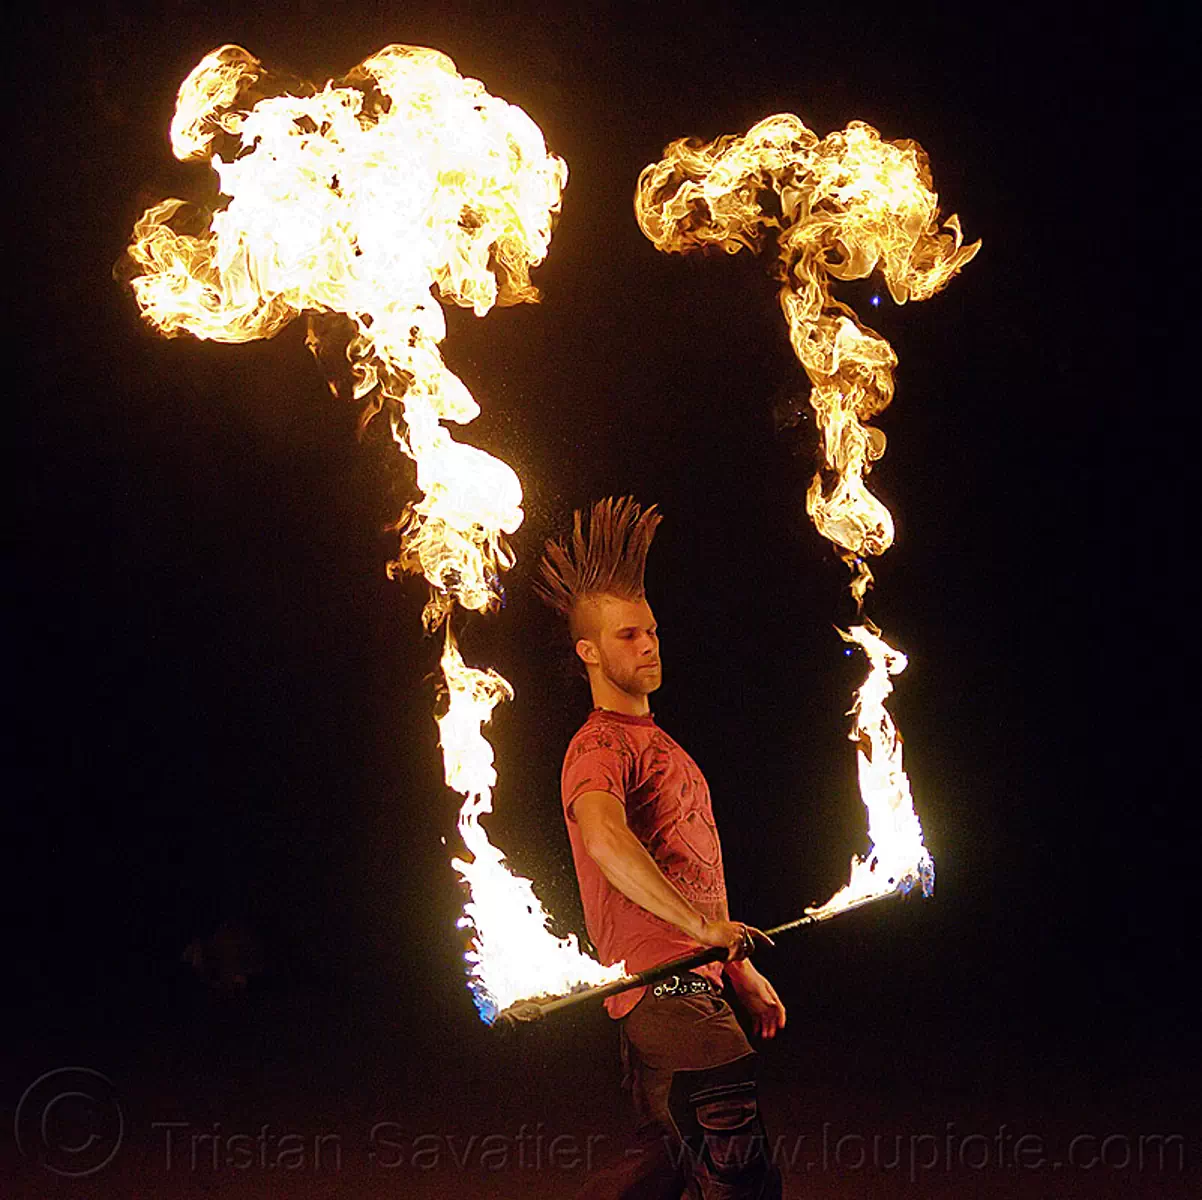 mushroom flames - fire staff, fire dancer, fire dancing, fire performer, fire spinning, fire staff, man, mohawk hair, mushroom flames, night, spinning fire